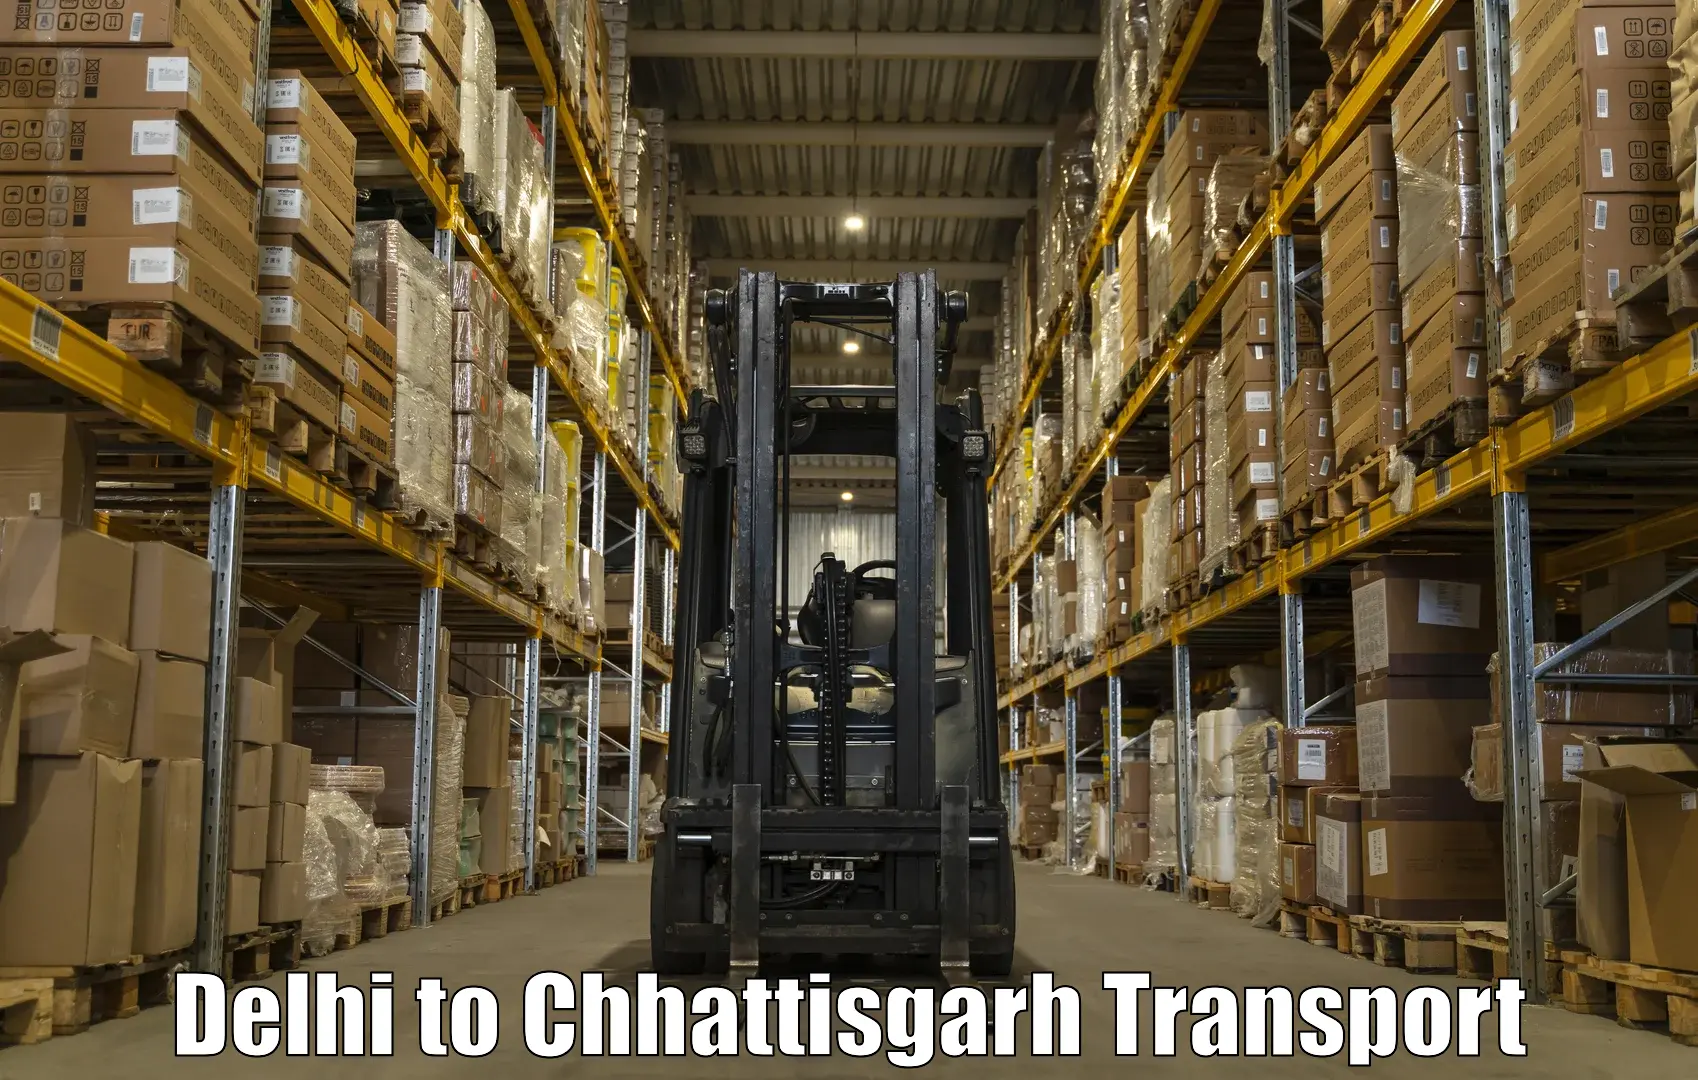 All India transport service Delhi to Bijapur Chhattisgarh